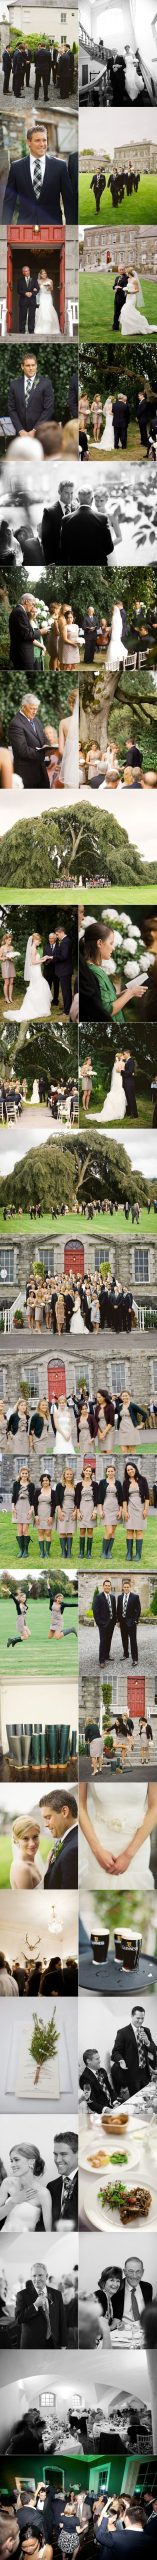 Irish Wedding 2